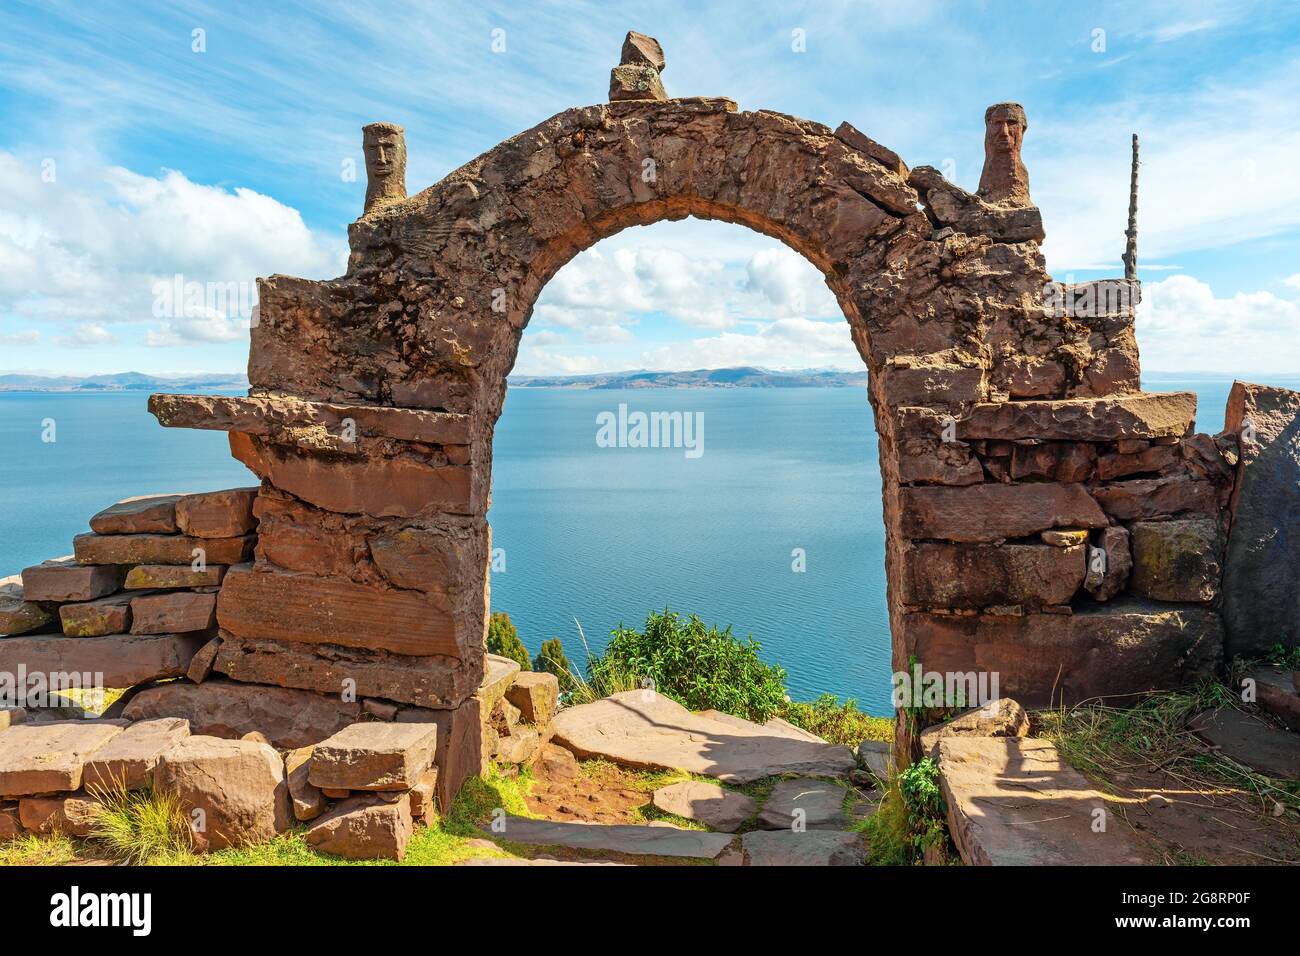 Arch sur l'île Taquile, lac Titicaca, Pérou. Banque D'Images